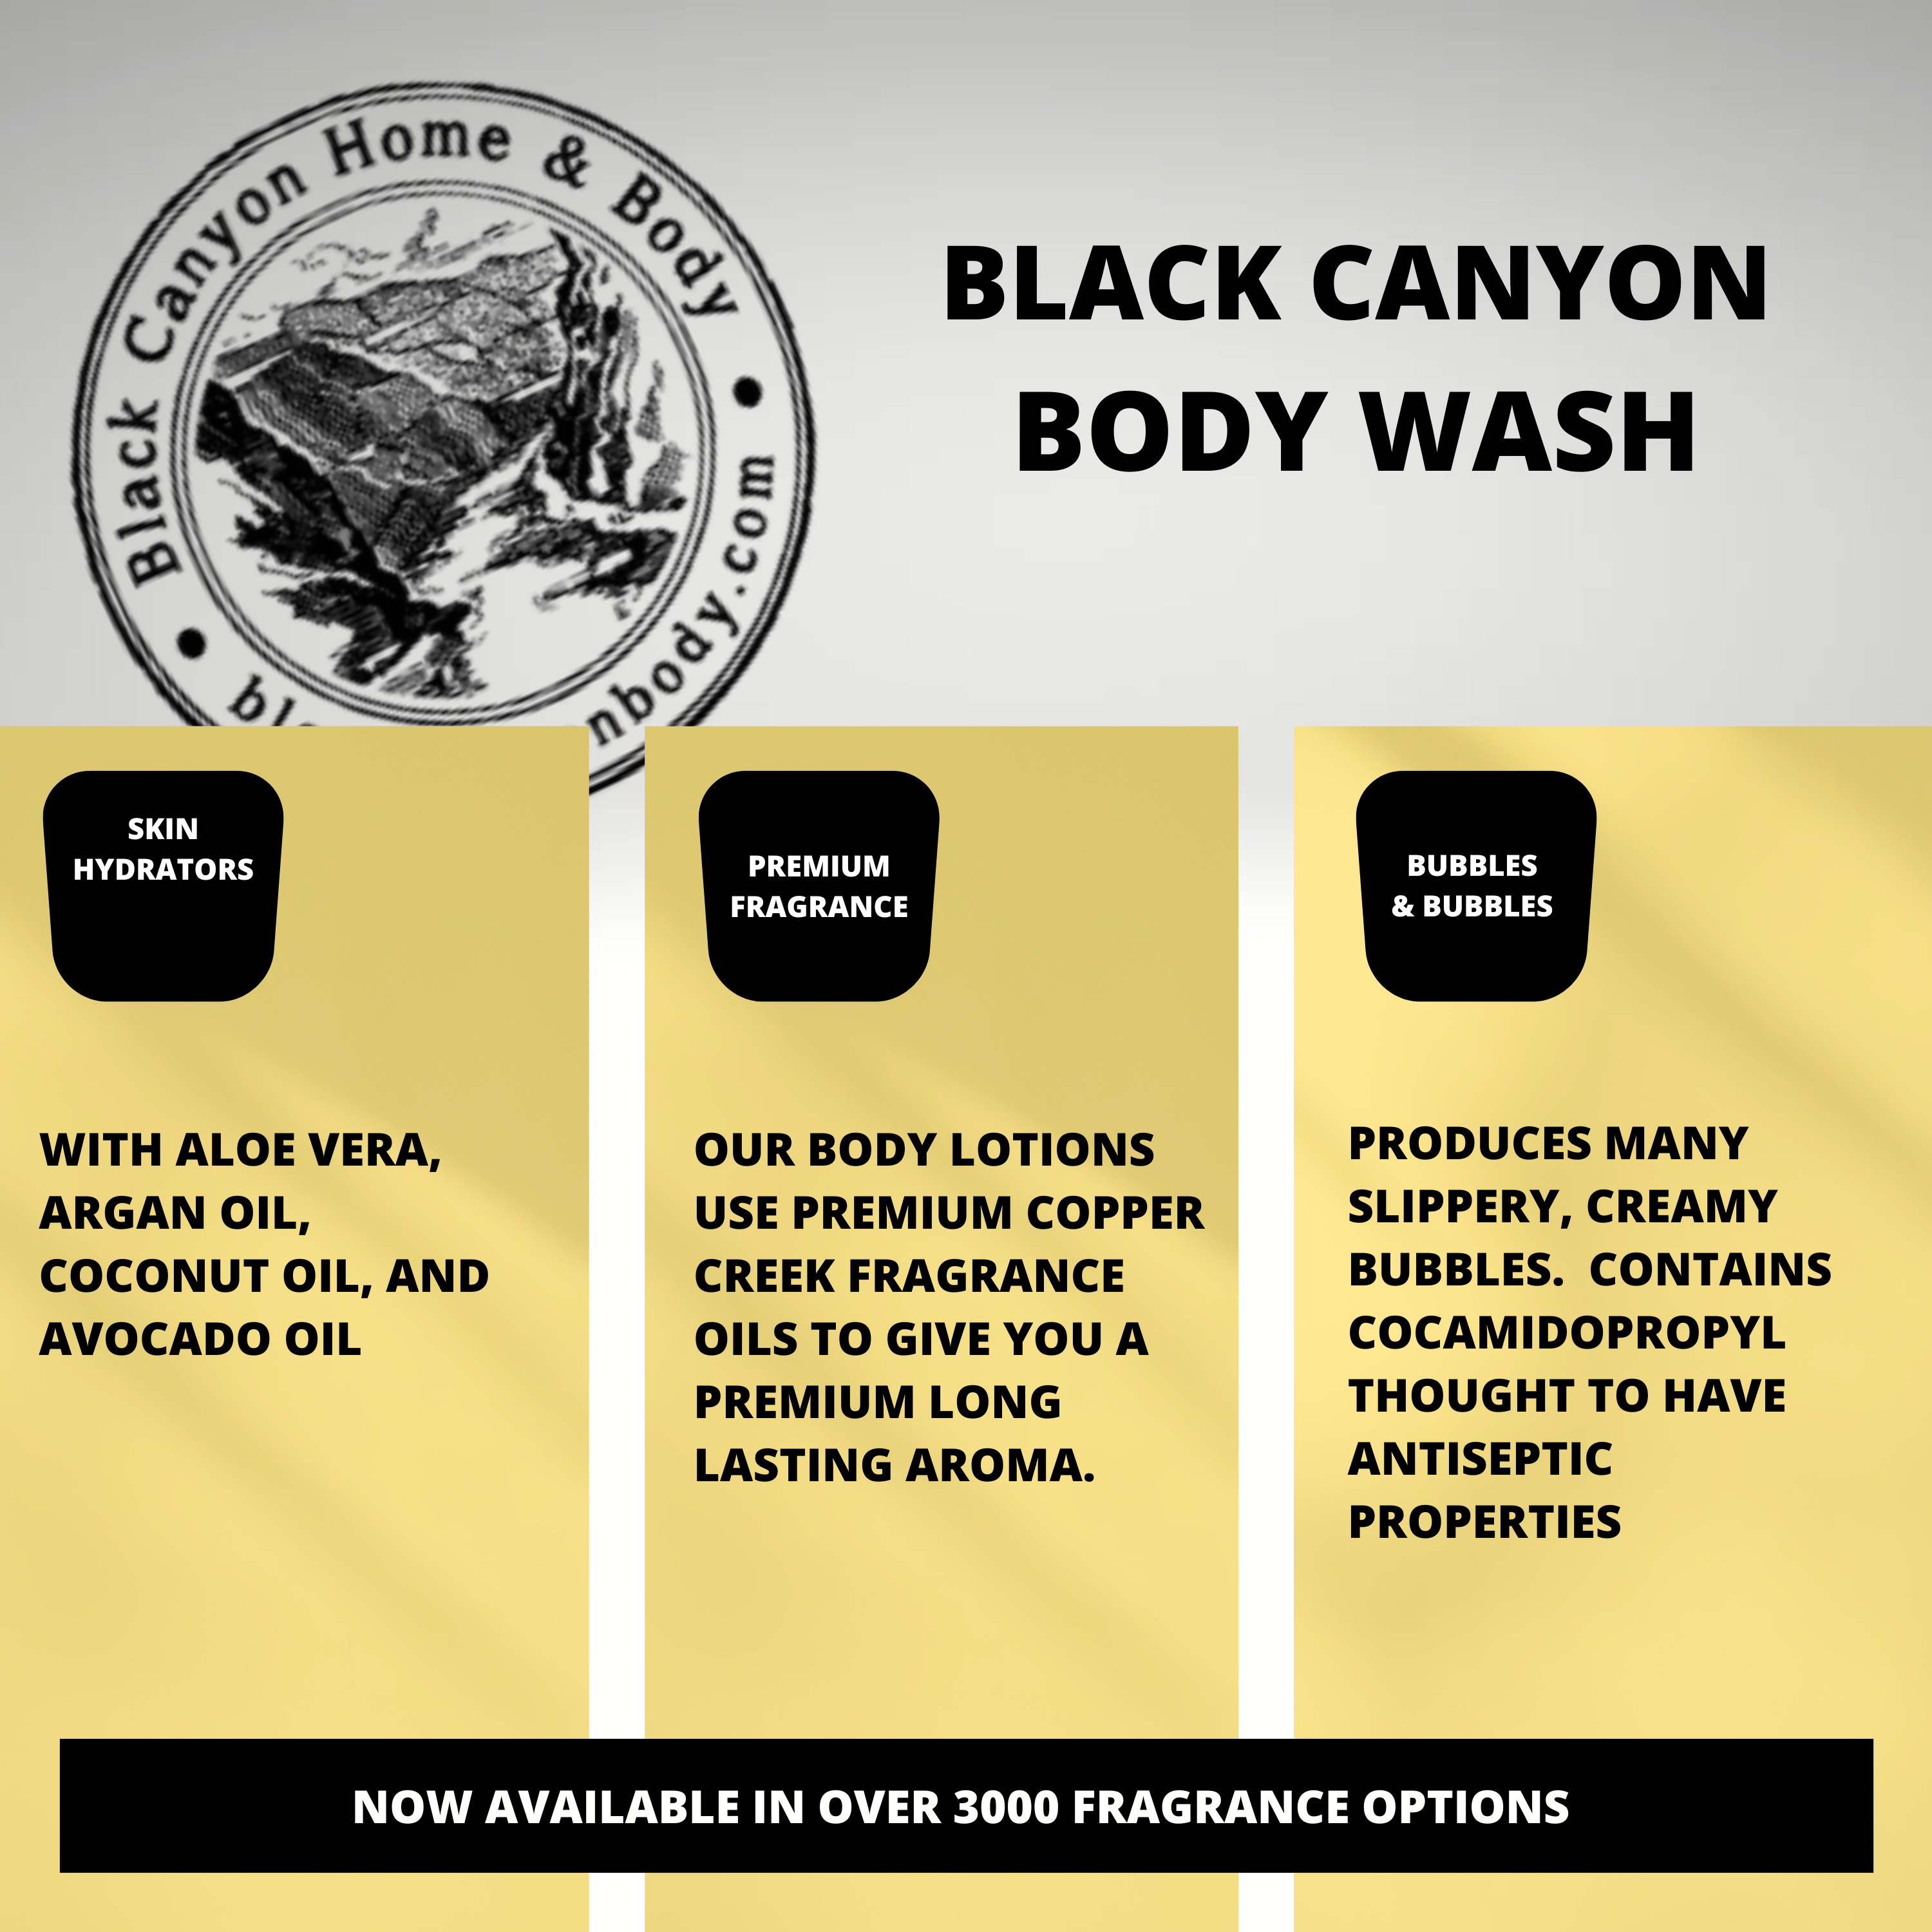 Black Canyon Cucumber & Cantaloupe Scented Luxury Body Wash